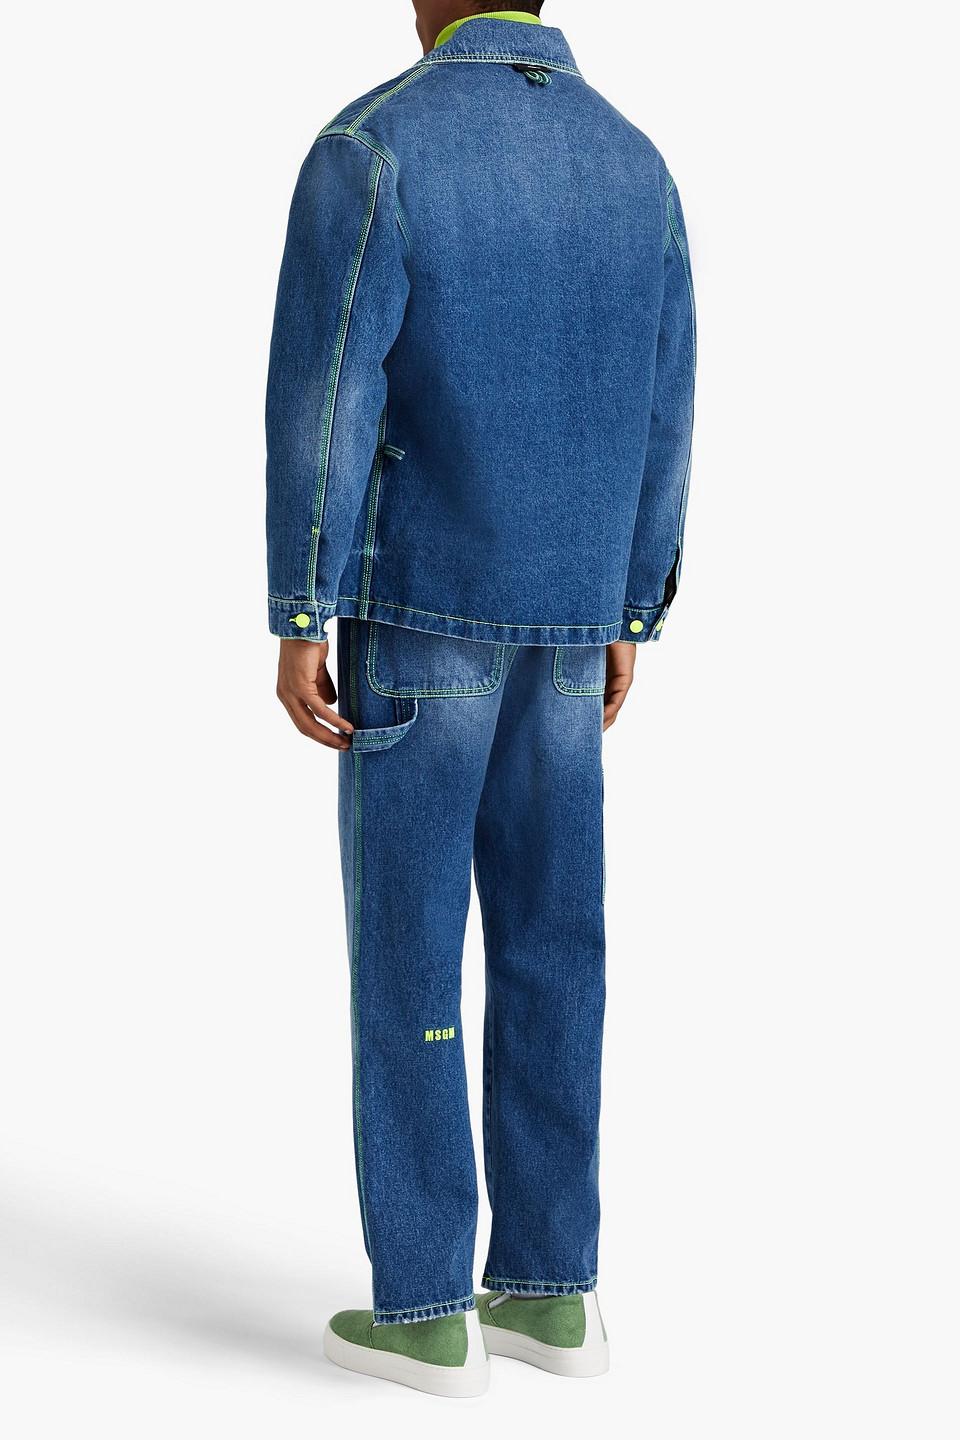 MSGM Neon-trimmed Denim Jacket in Blue for Men | Lyst